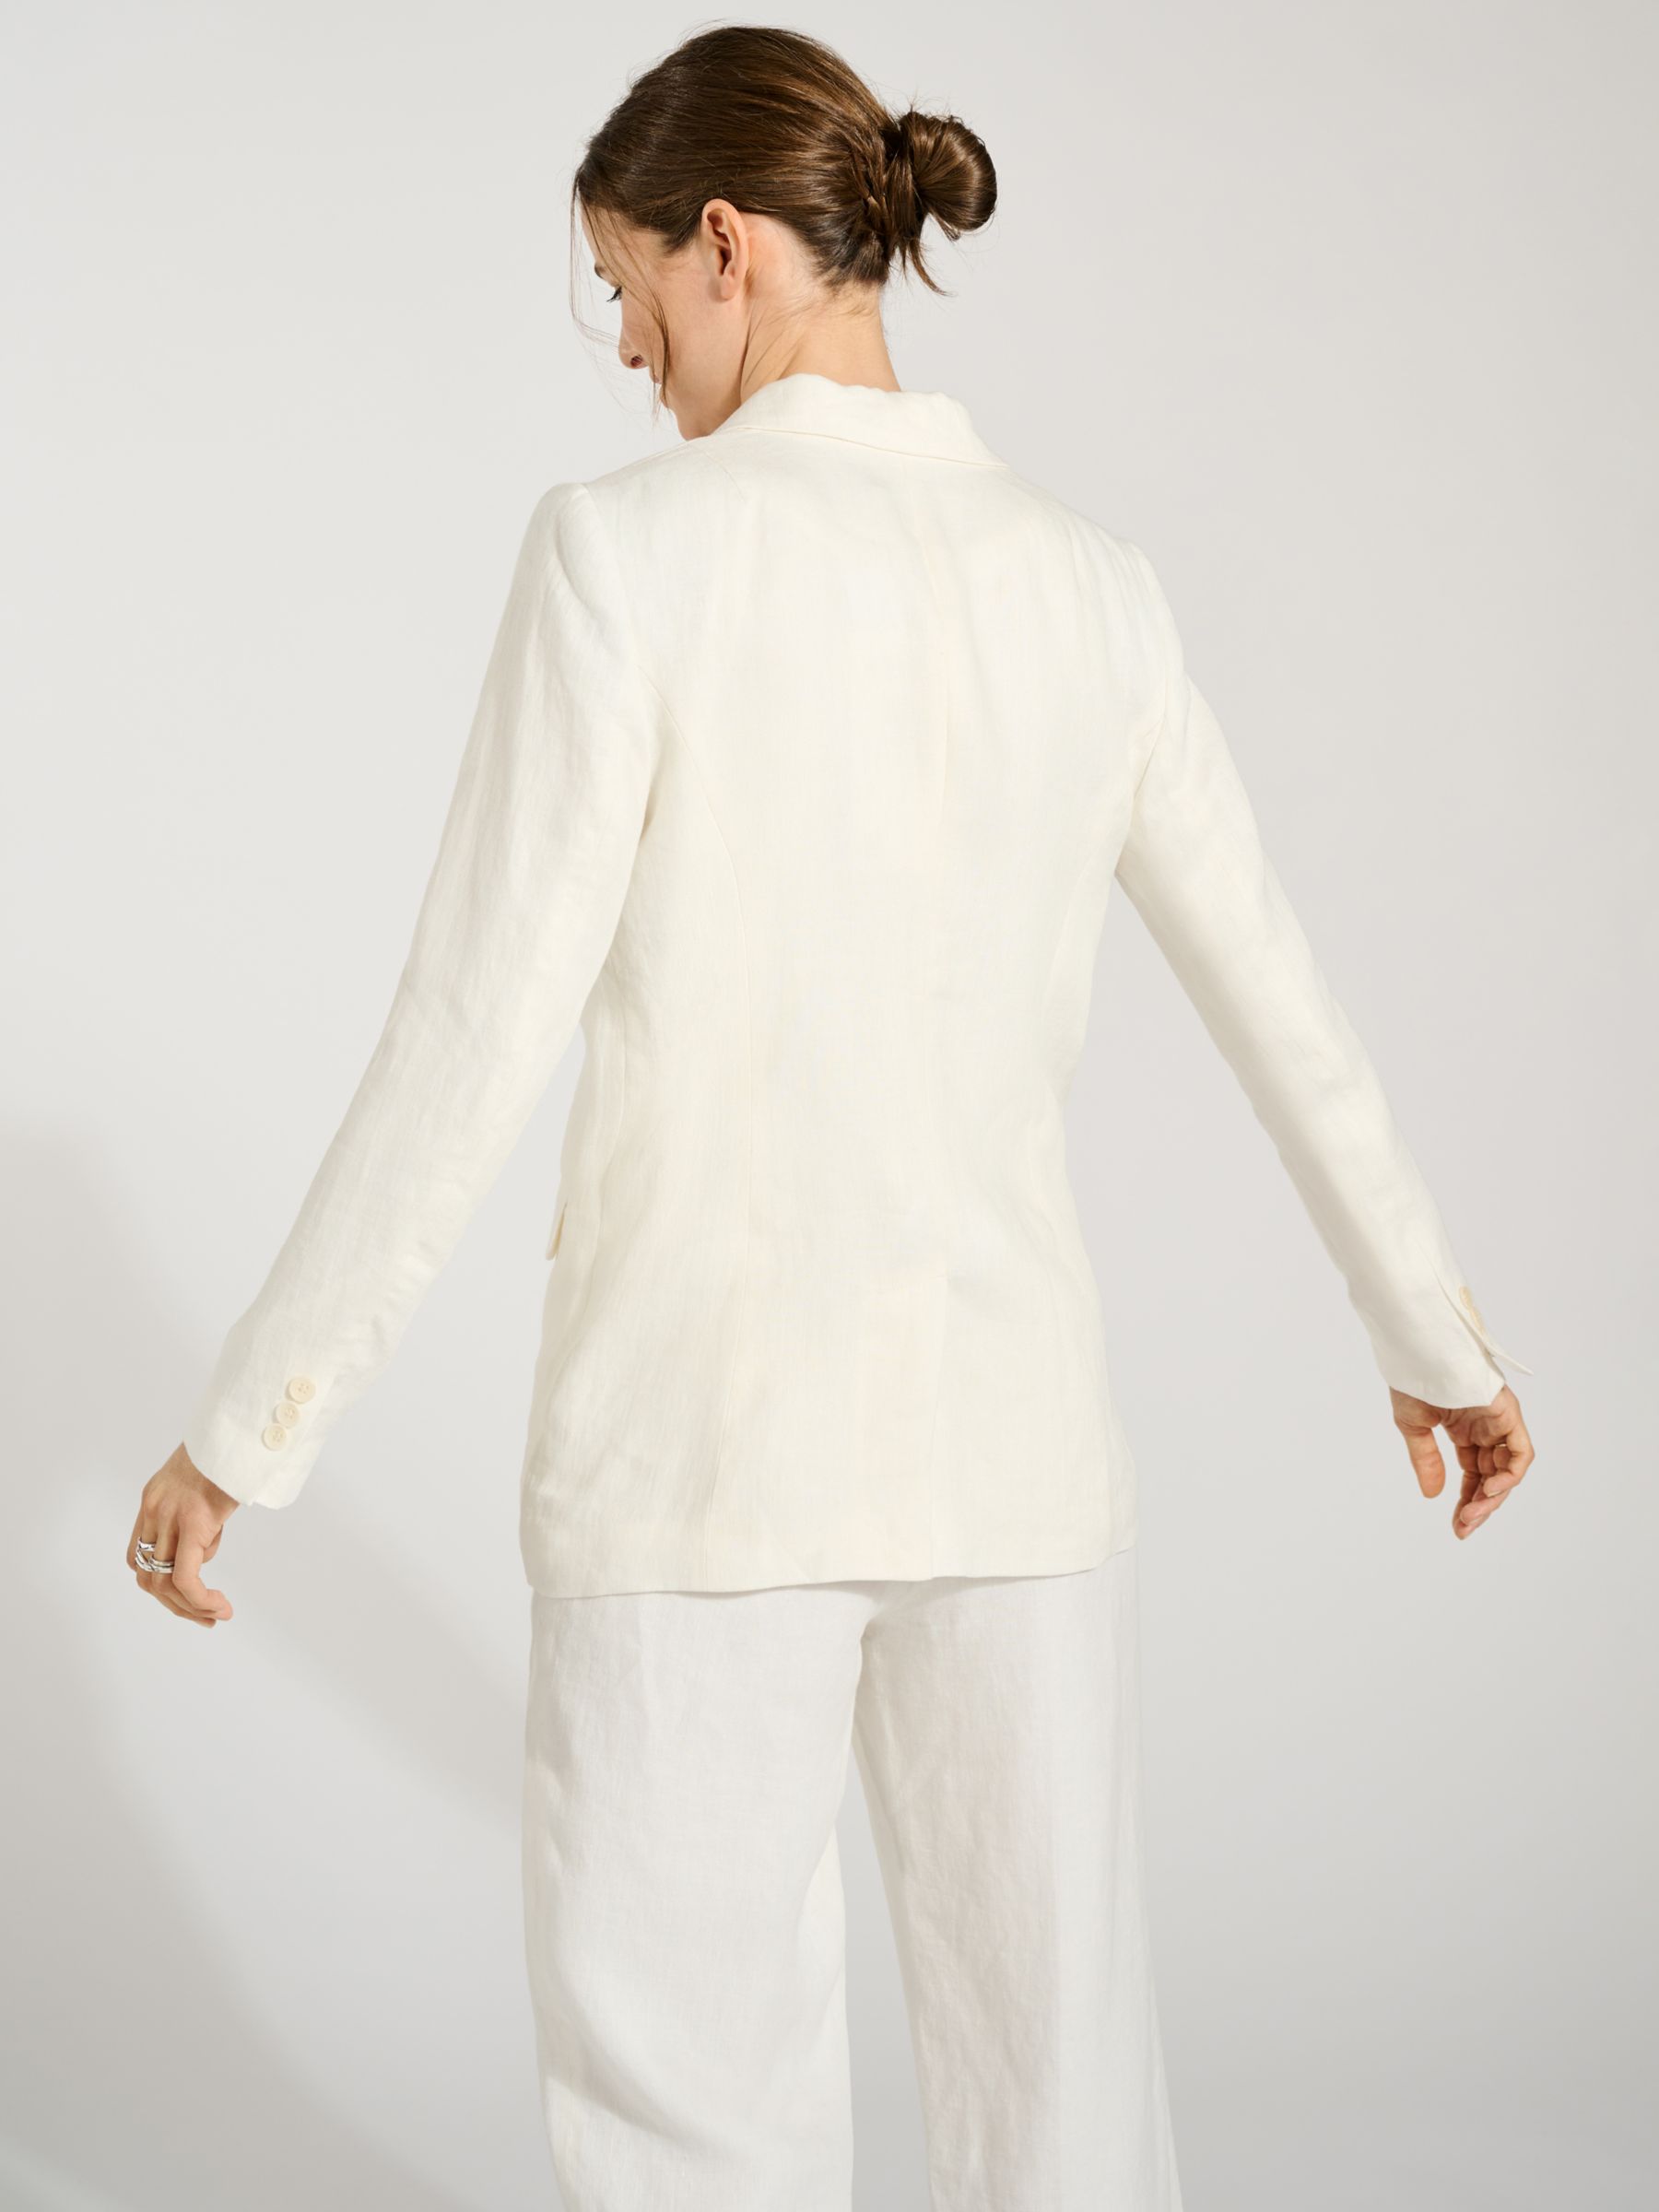 Buy Baukjen Whitley Plain Double Breasted Linen Blazer, Pure White Online at johnlewis.com